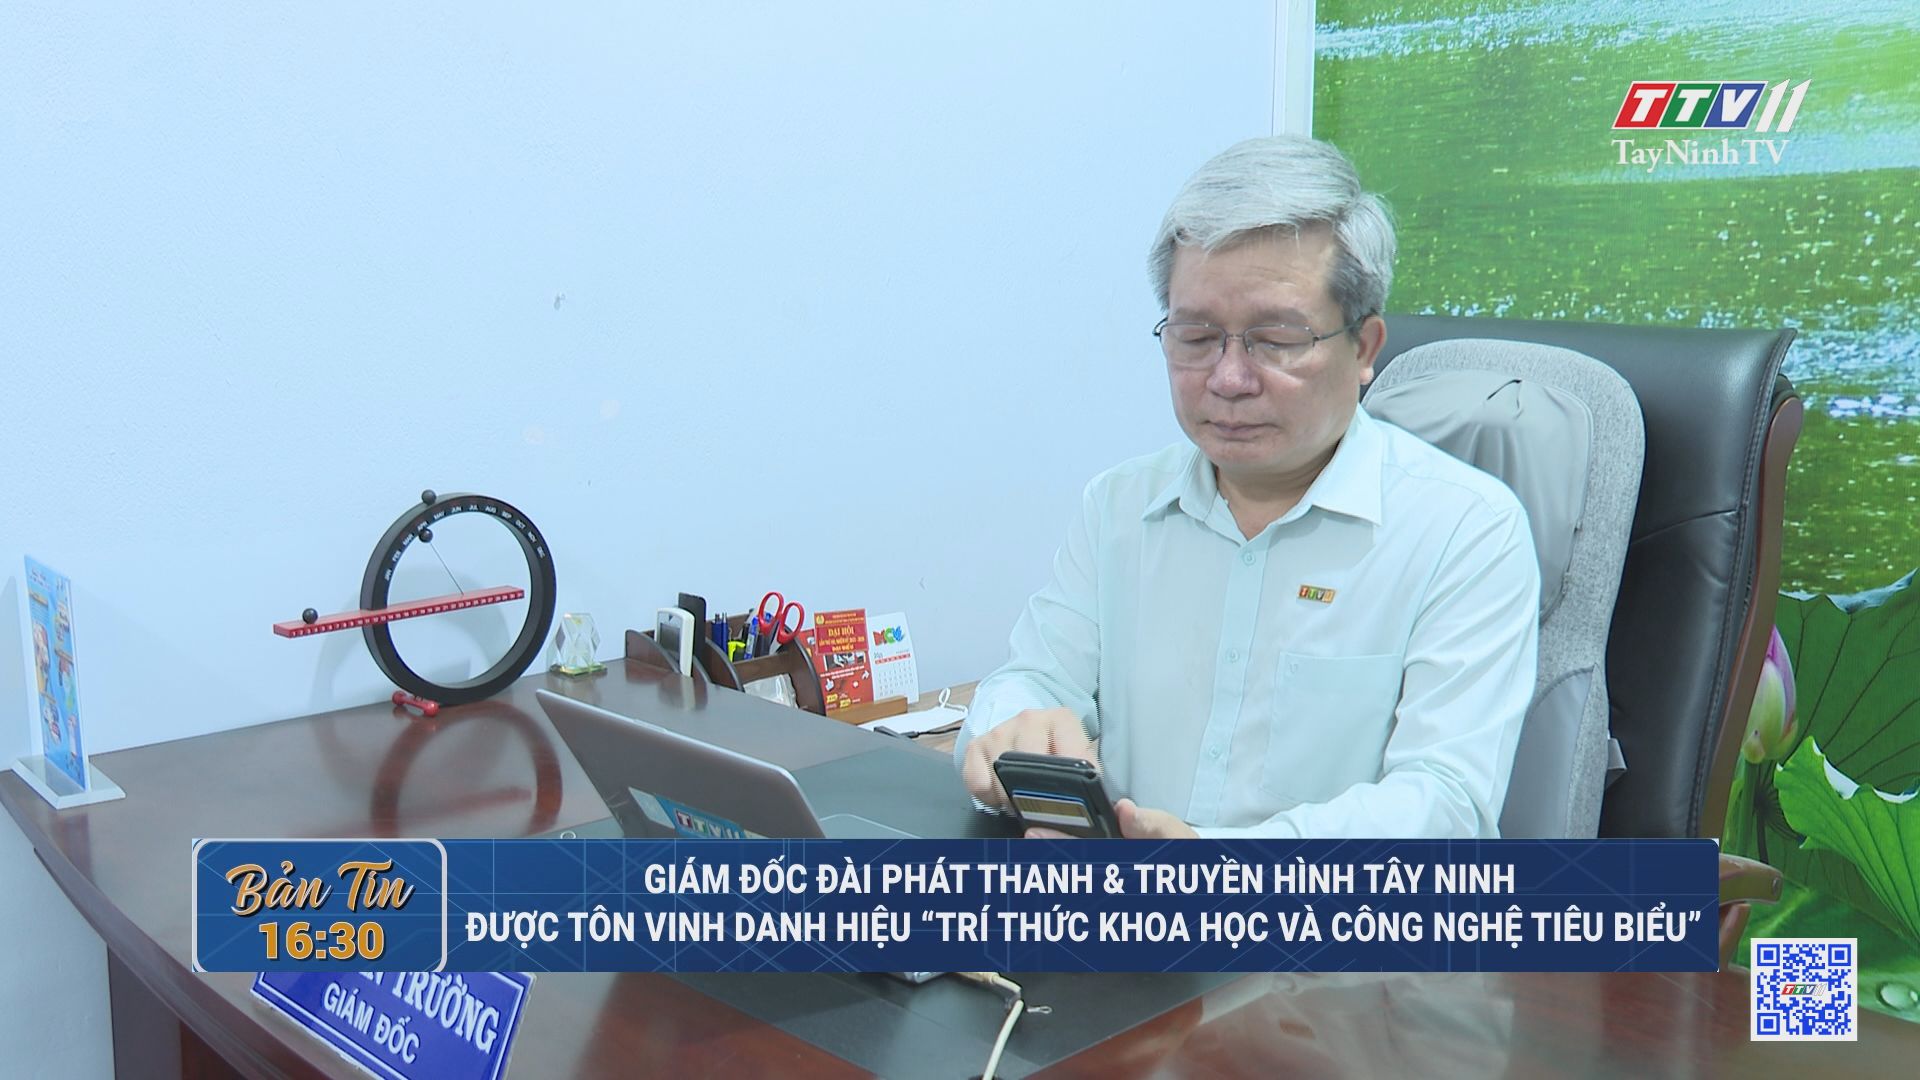 Giám đốc Đài Phát thanh và Truyền hình Tây Ninh được tôn vinh danh hiệu “Trí thức khoa học và công nghệ tiêu biểu” | TayNinhTV